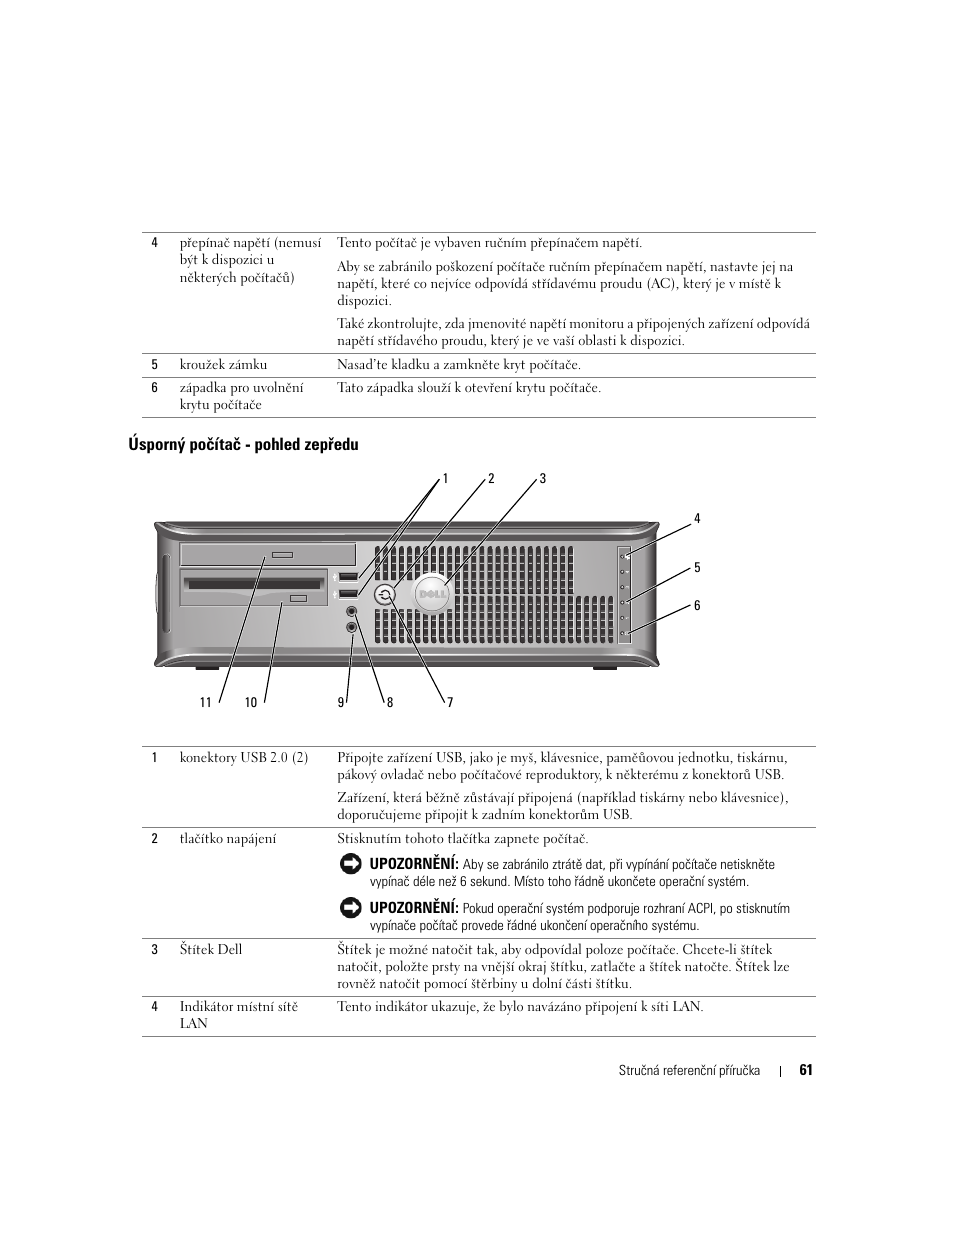 Úsporný počítač - pohled zepředu | Dell OptiPlex GX620 User Manual | Page 61 / 338